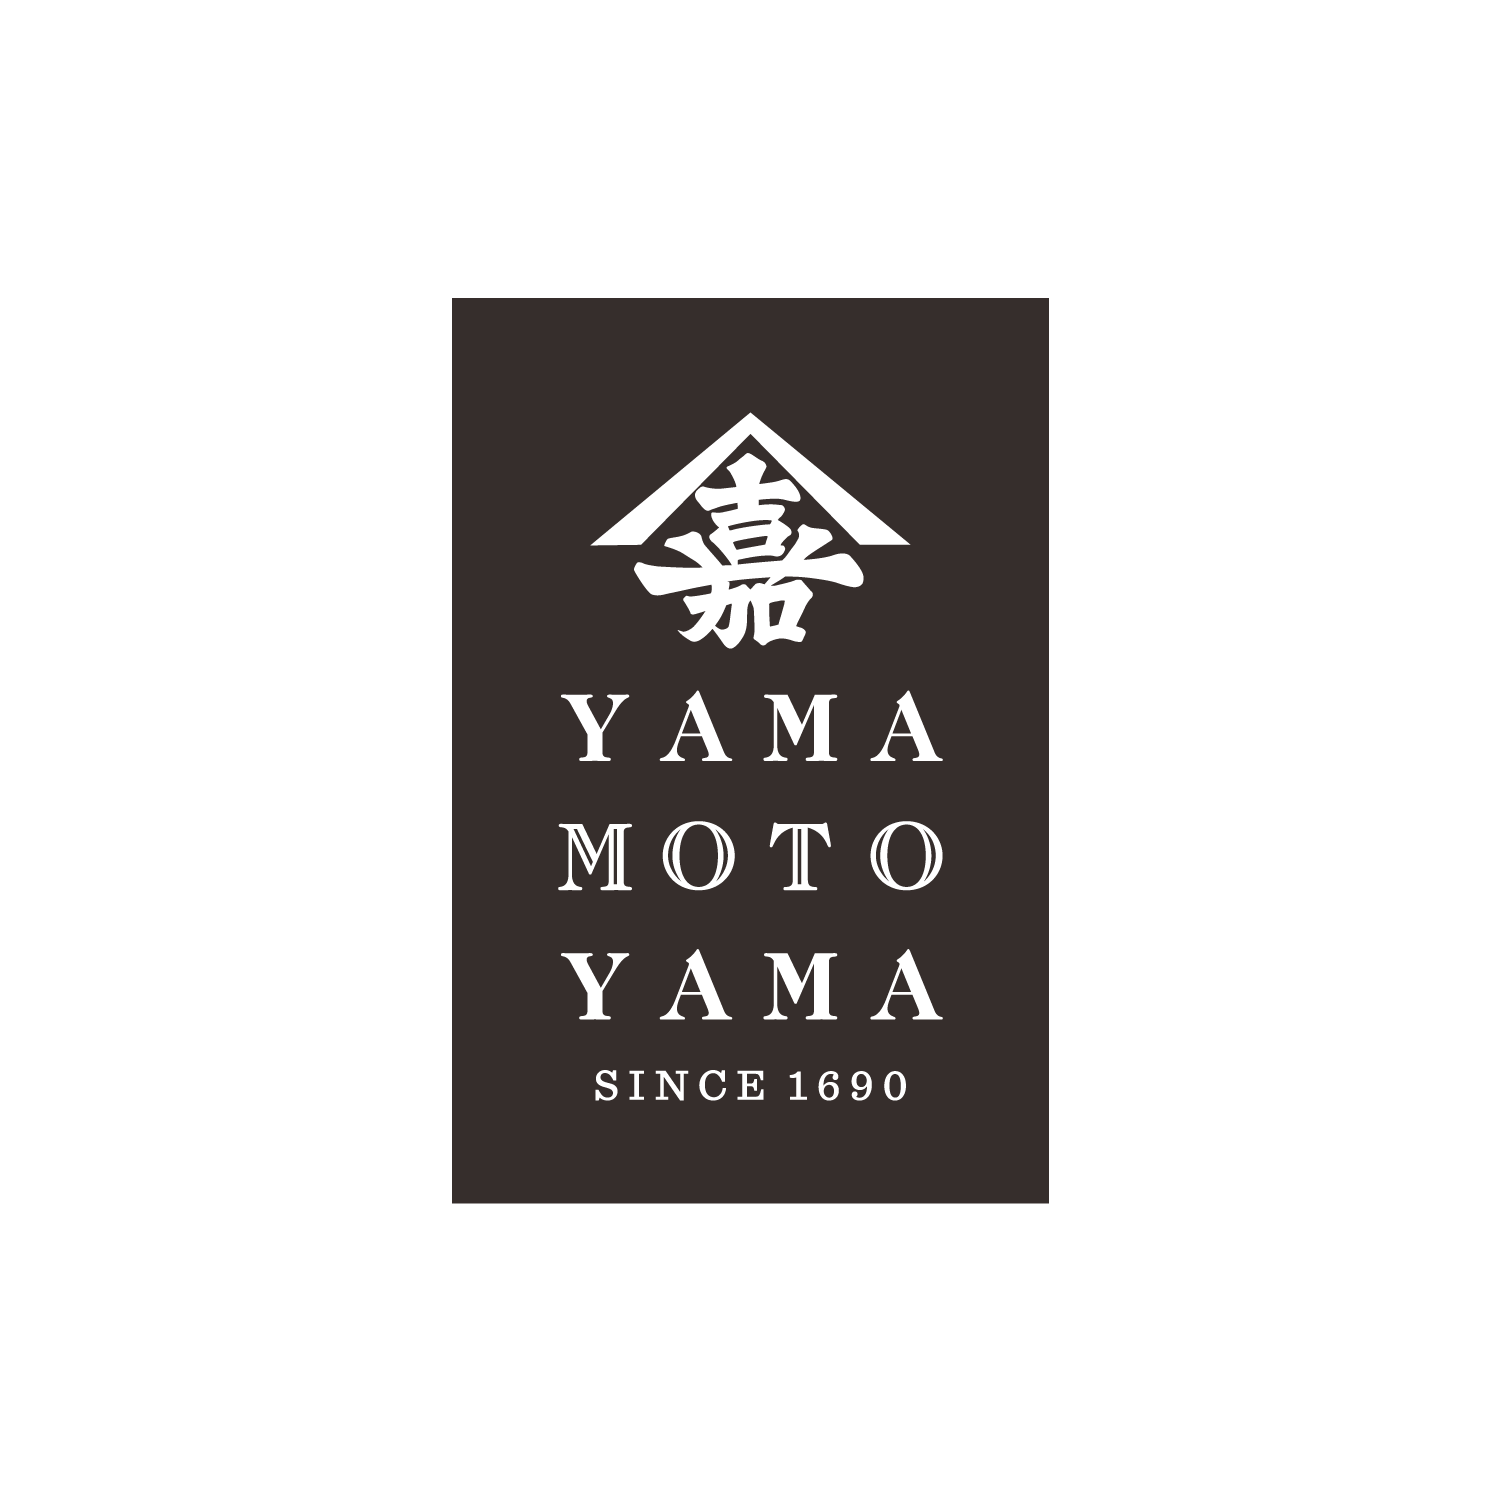 Yamamotoyama